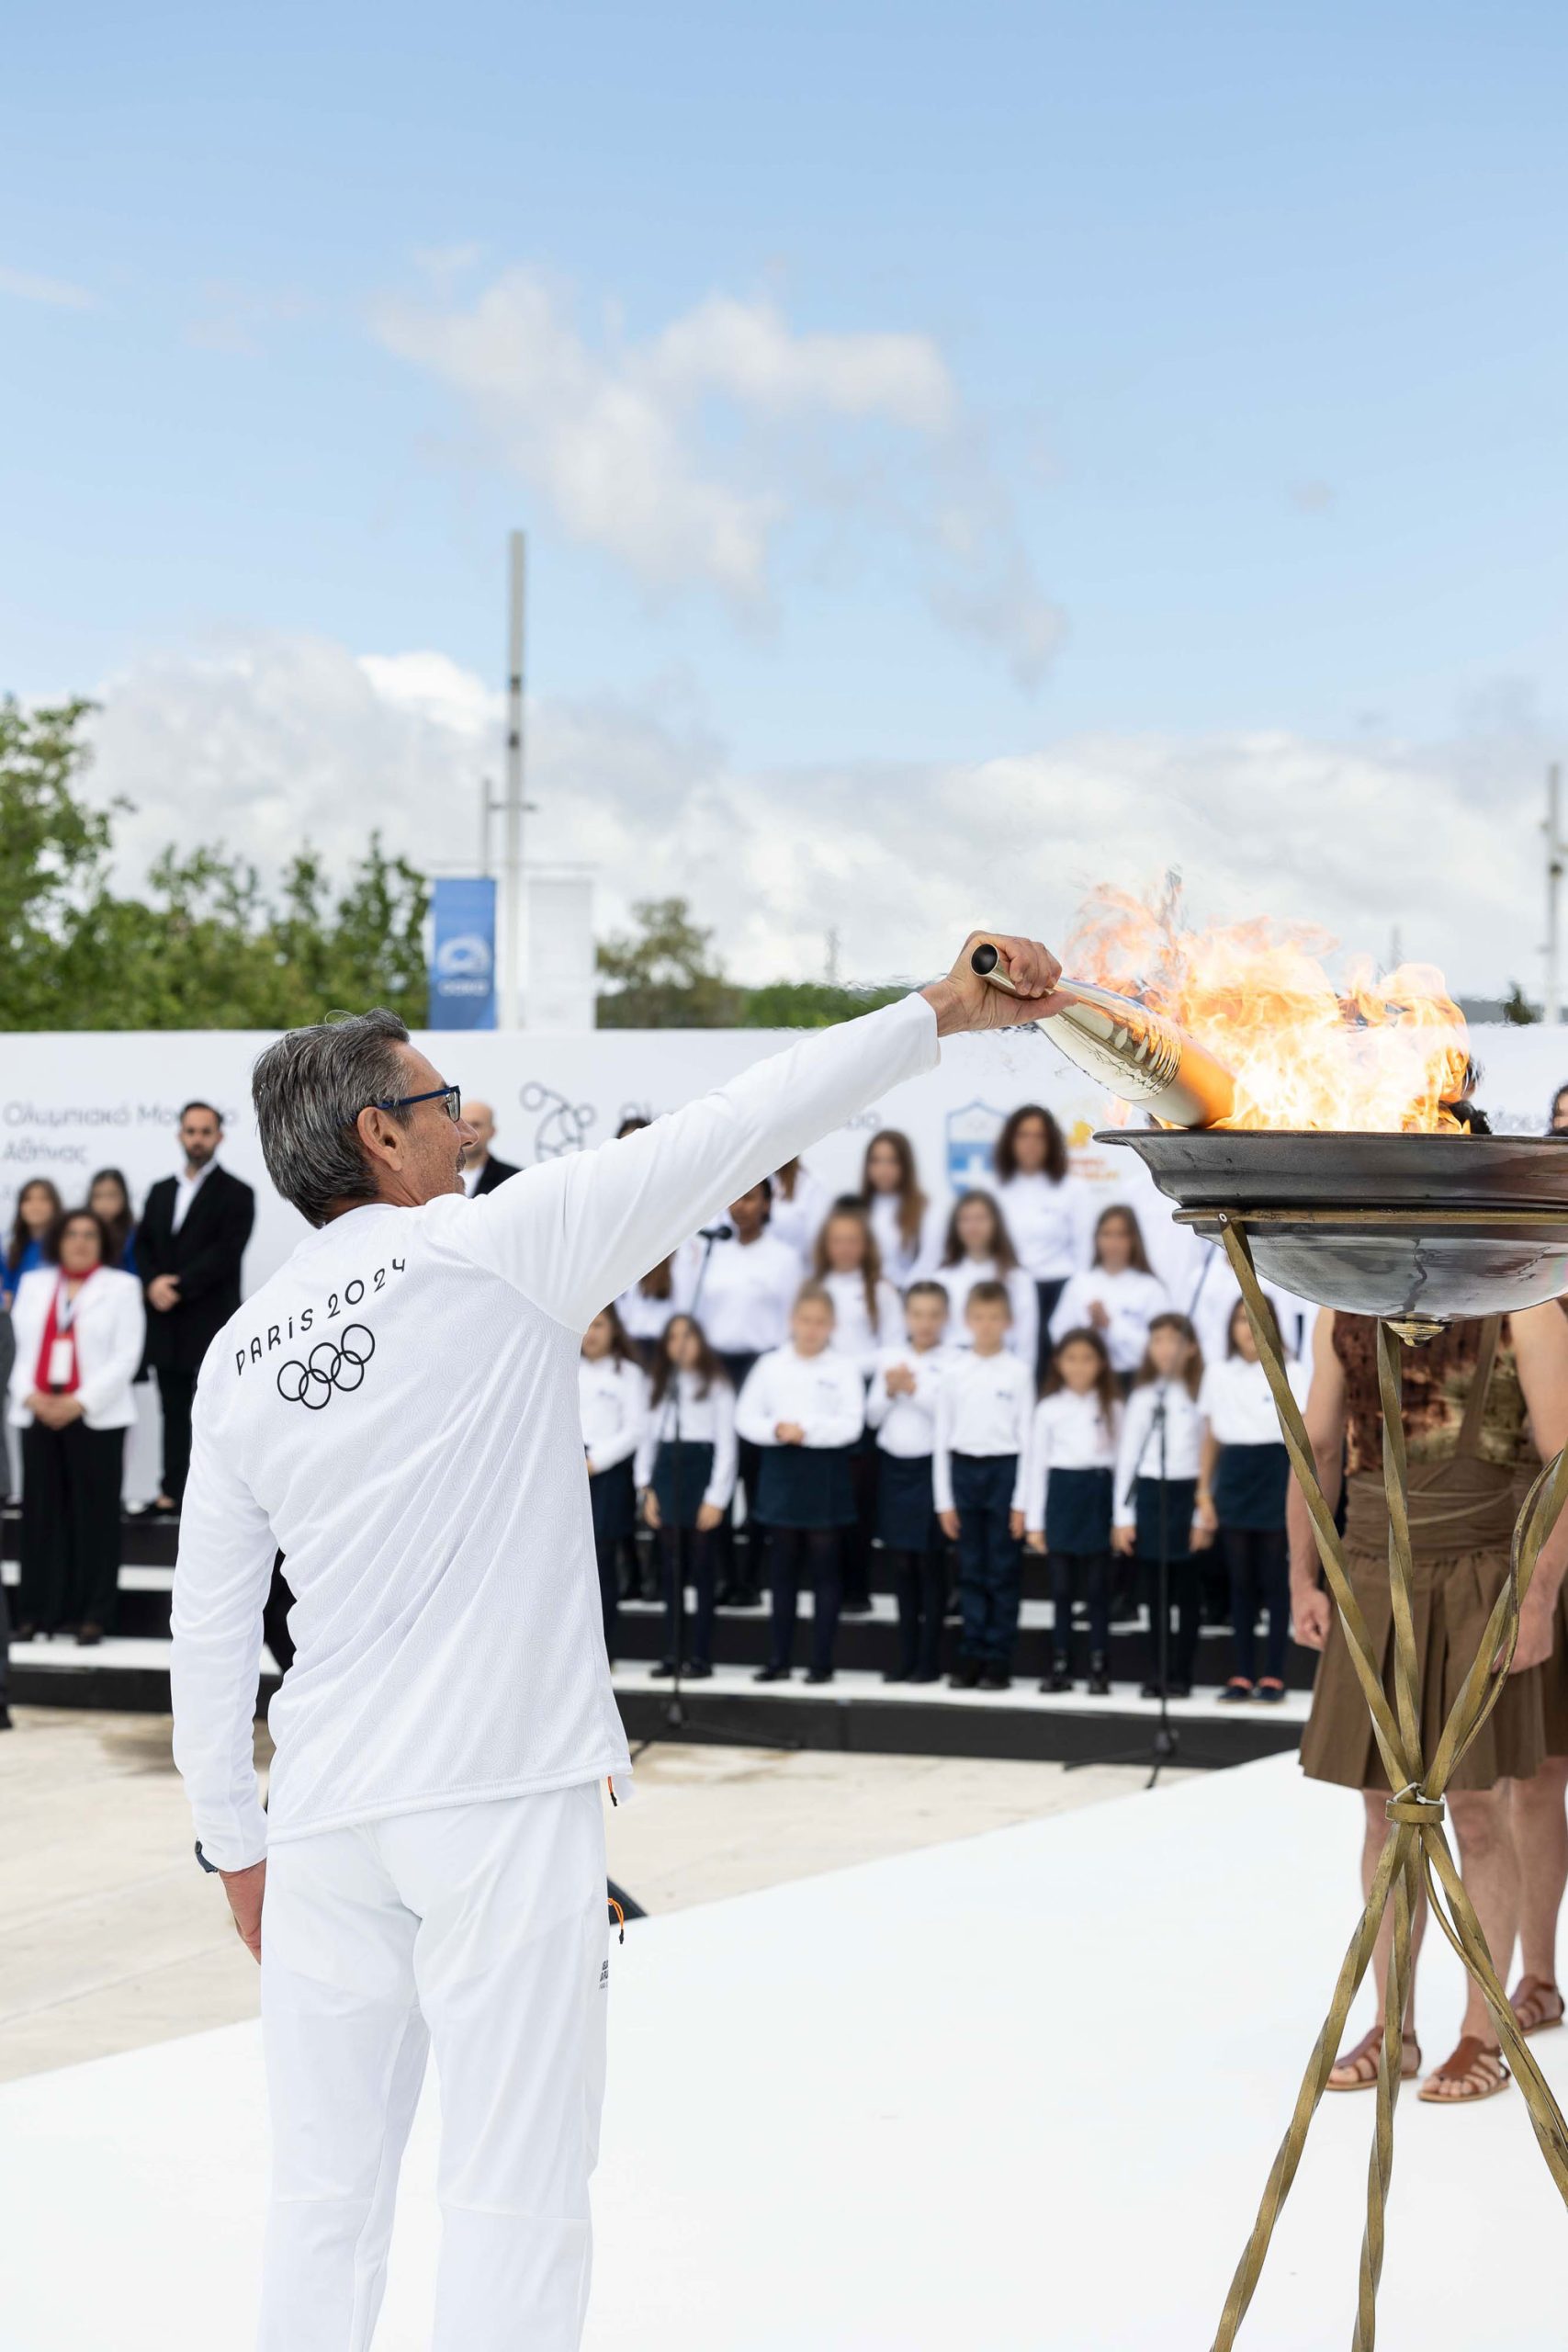 Η συμπερίληψη του Ολυμπιακού Μουσείου Αθήνας στο ταξίδι της Ολυμπιακής Φλόγας: Ένας συμβολικός δεσμός με τον Ολυμπισμό
